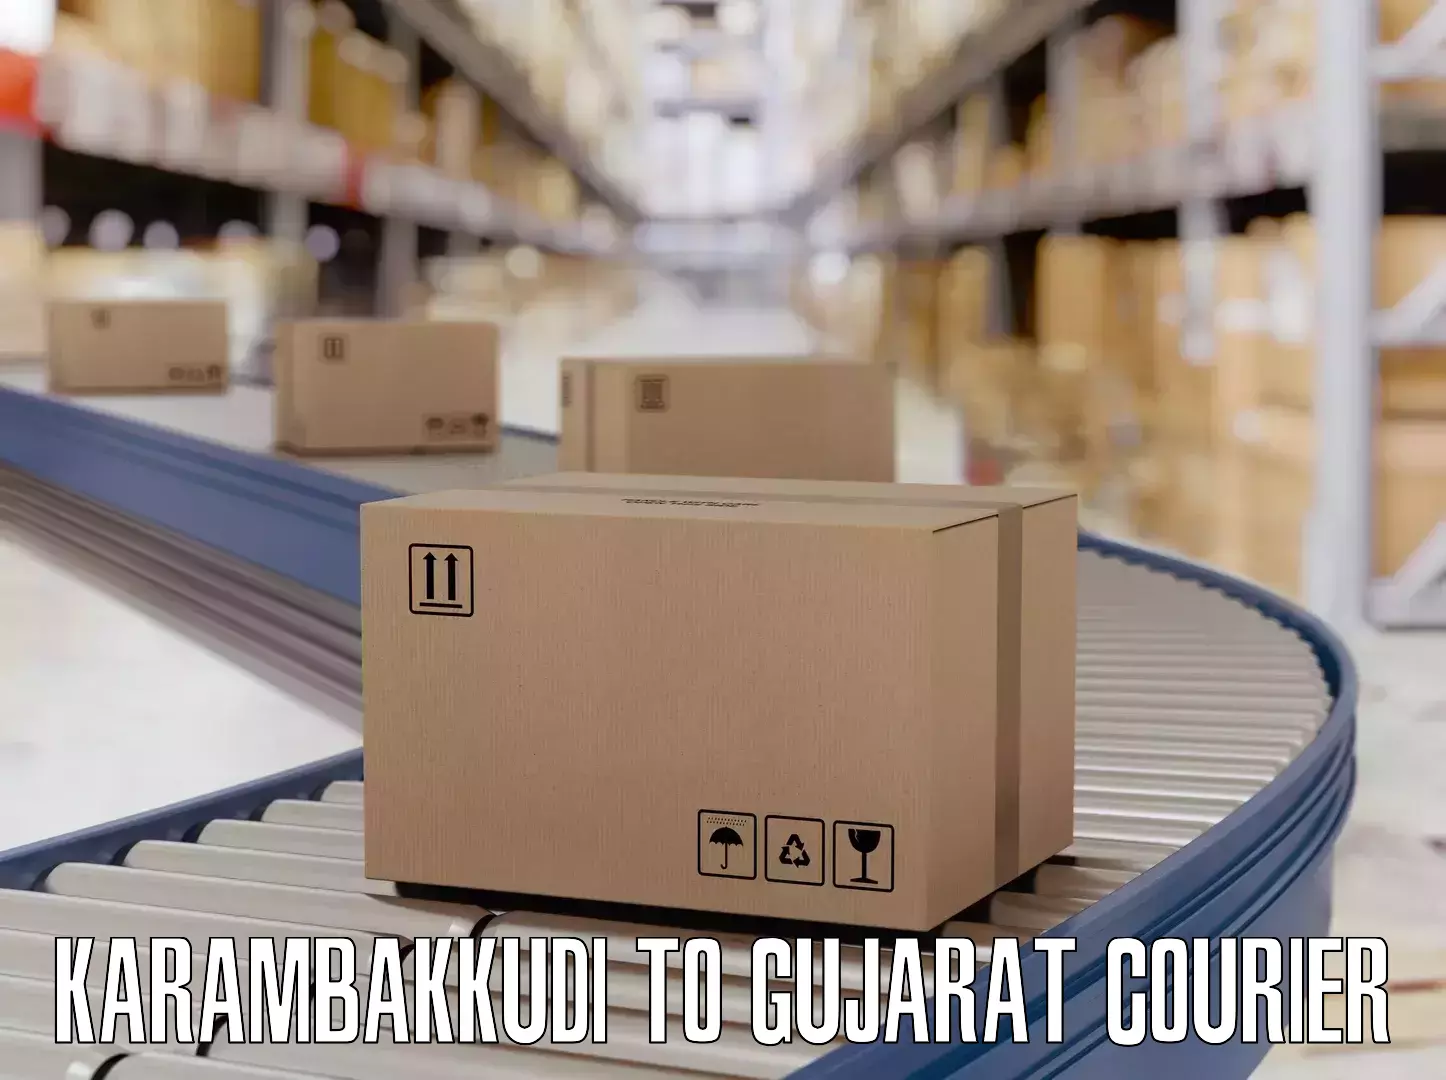 Luggage delivery optimization Karambakkudi to Mahemdavad